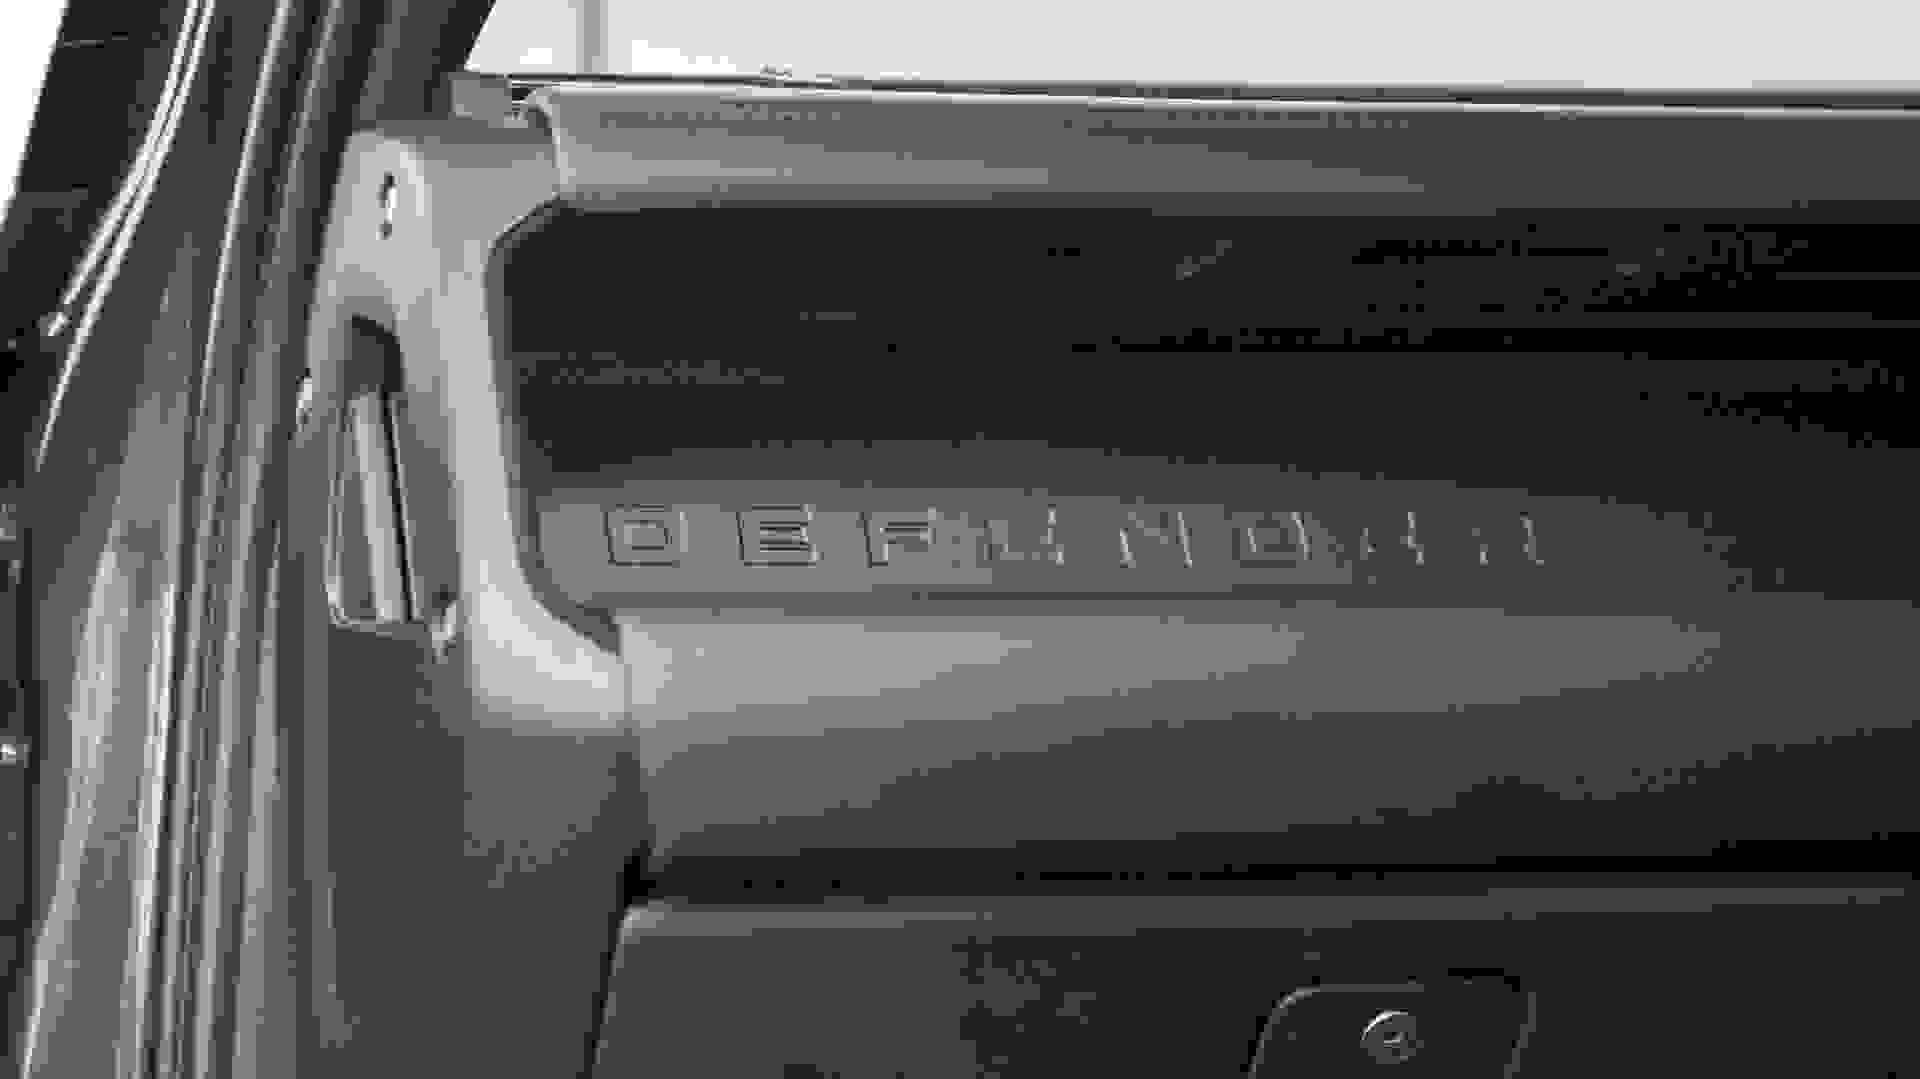 Land Rover DEFENDER V8 CARPATHIAN EDITION Photo 9e42be02-8839-4230-a7f3-d0391dc31de0.jpg